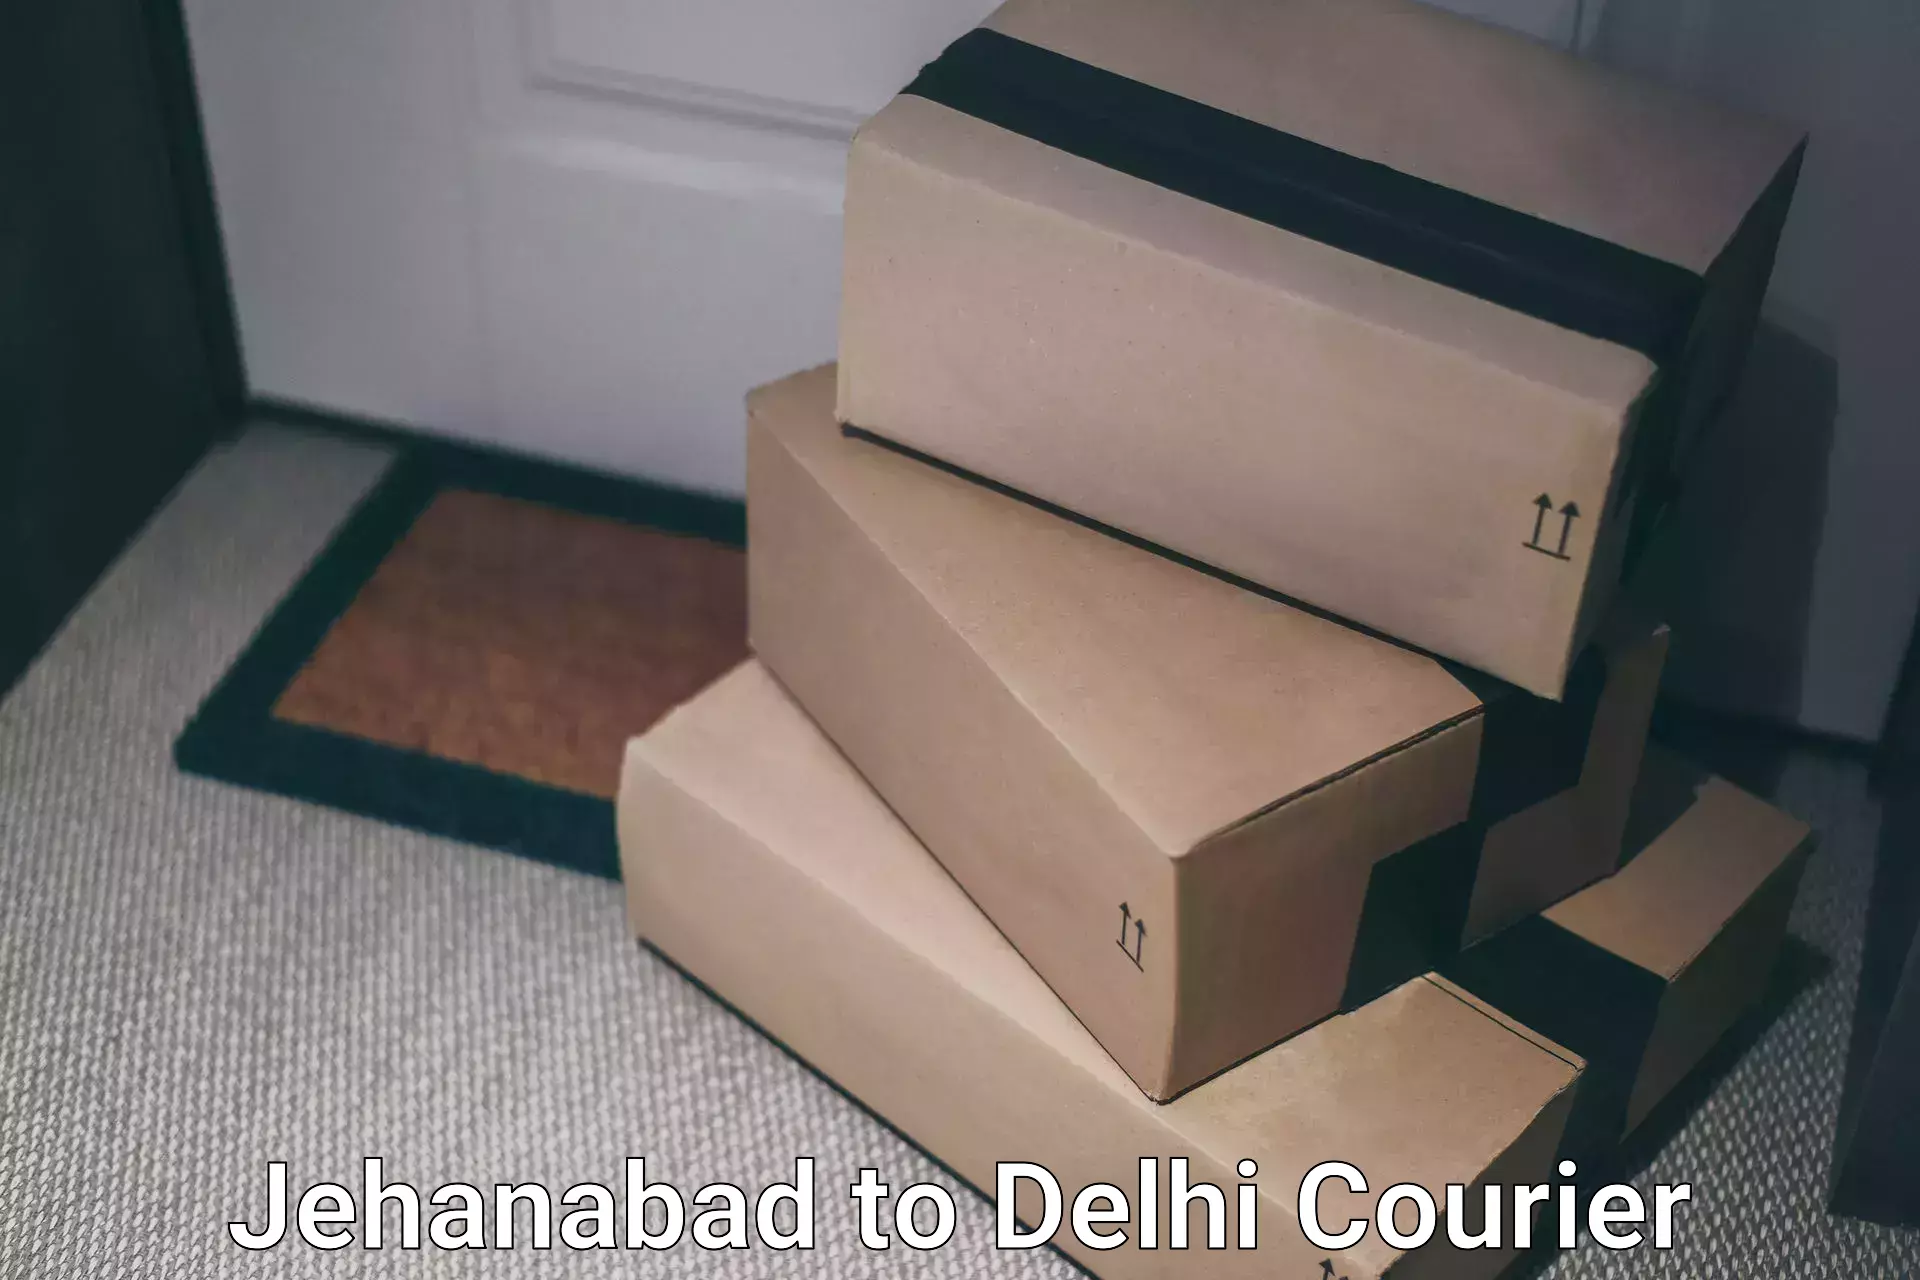 Same-day delivery solutions Jehanabad to Sarojini Nagar